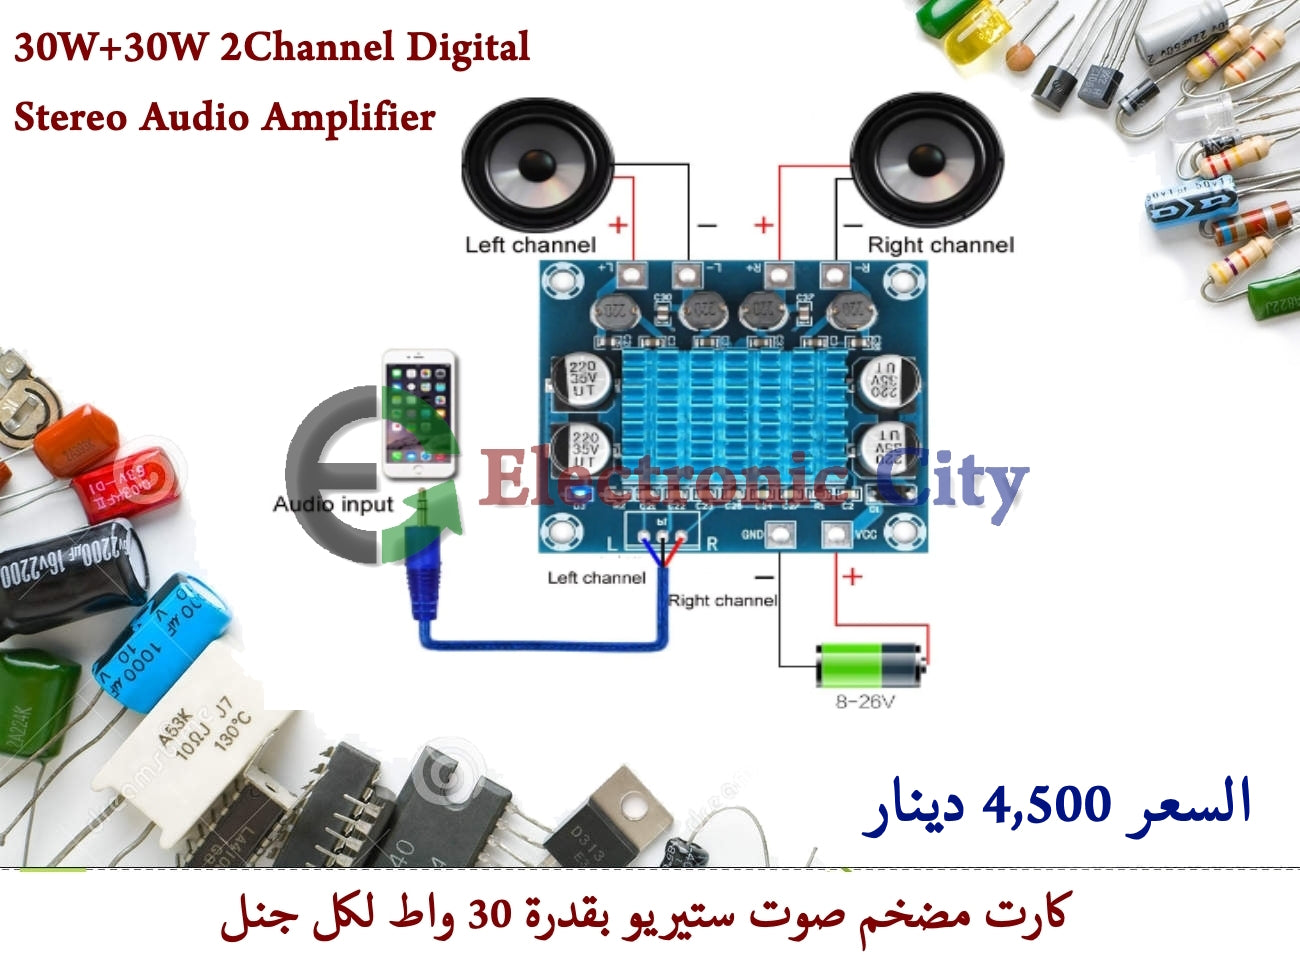 30W+30W 2Channel Digital Stereo Audio Amplifier #L9 011051